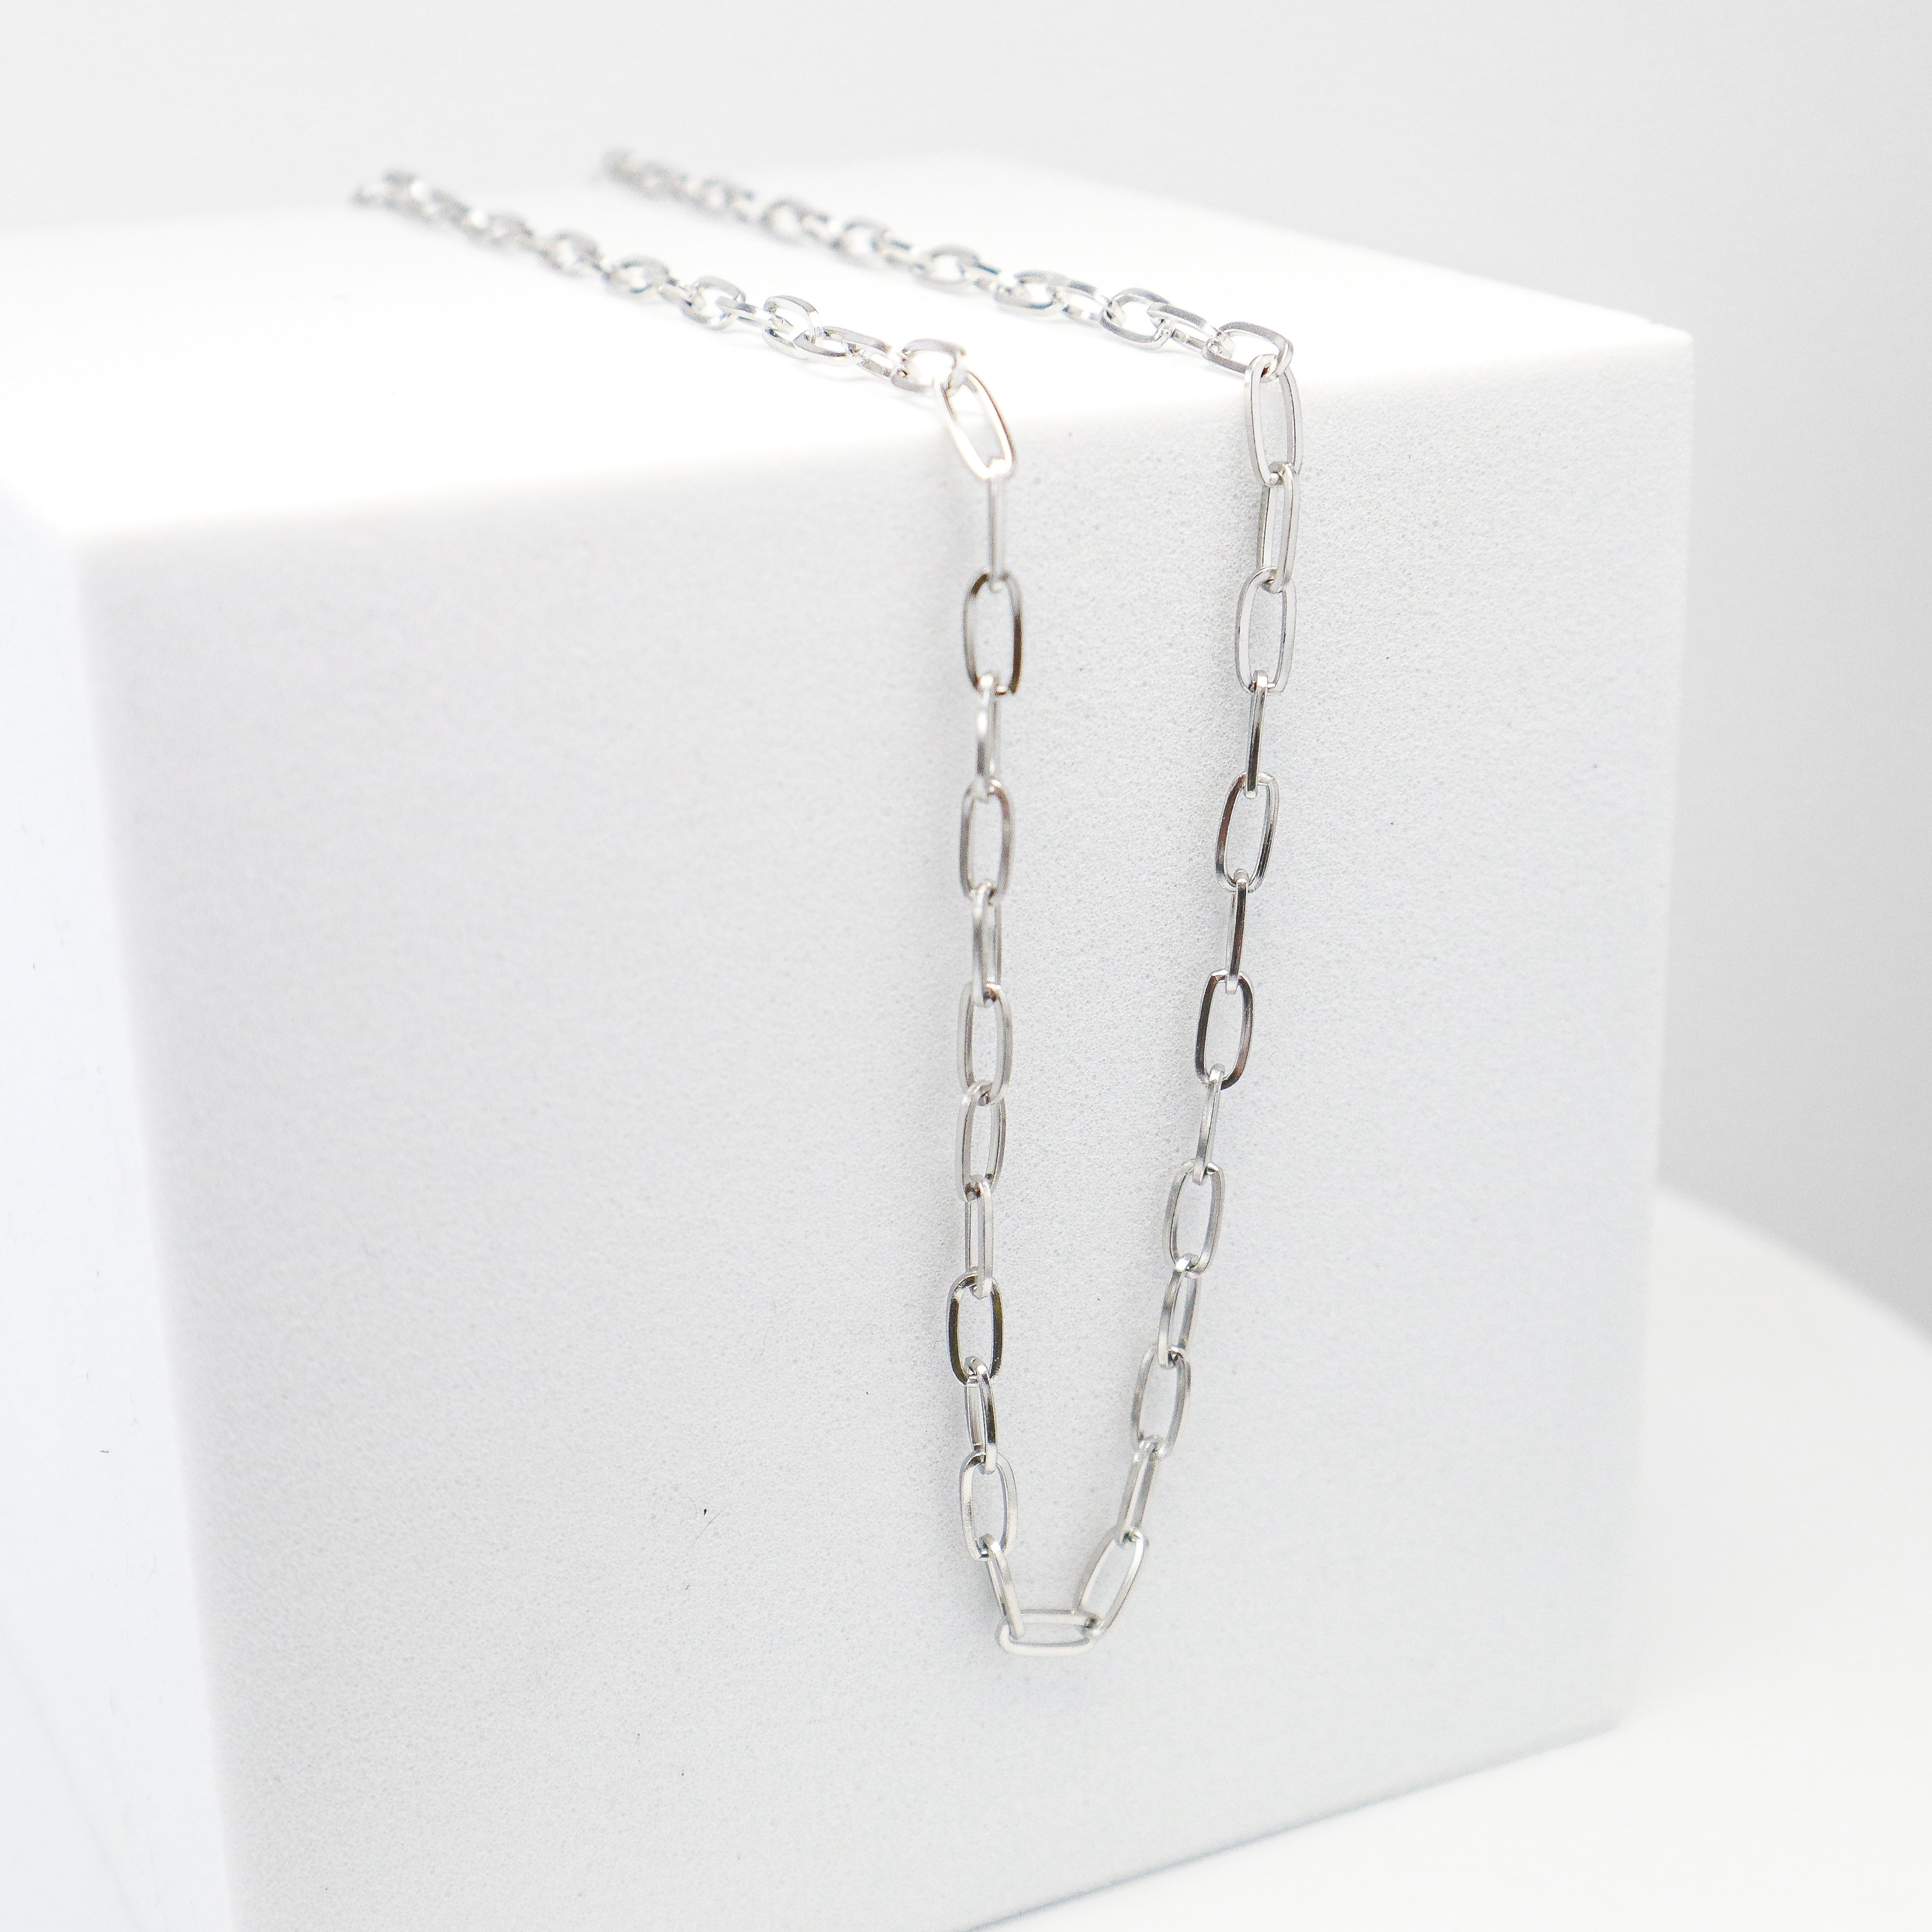 Delicate Silver Staple Chain Necklace